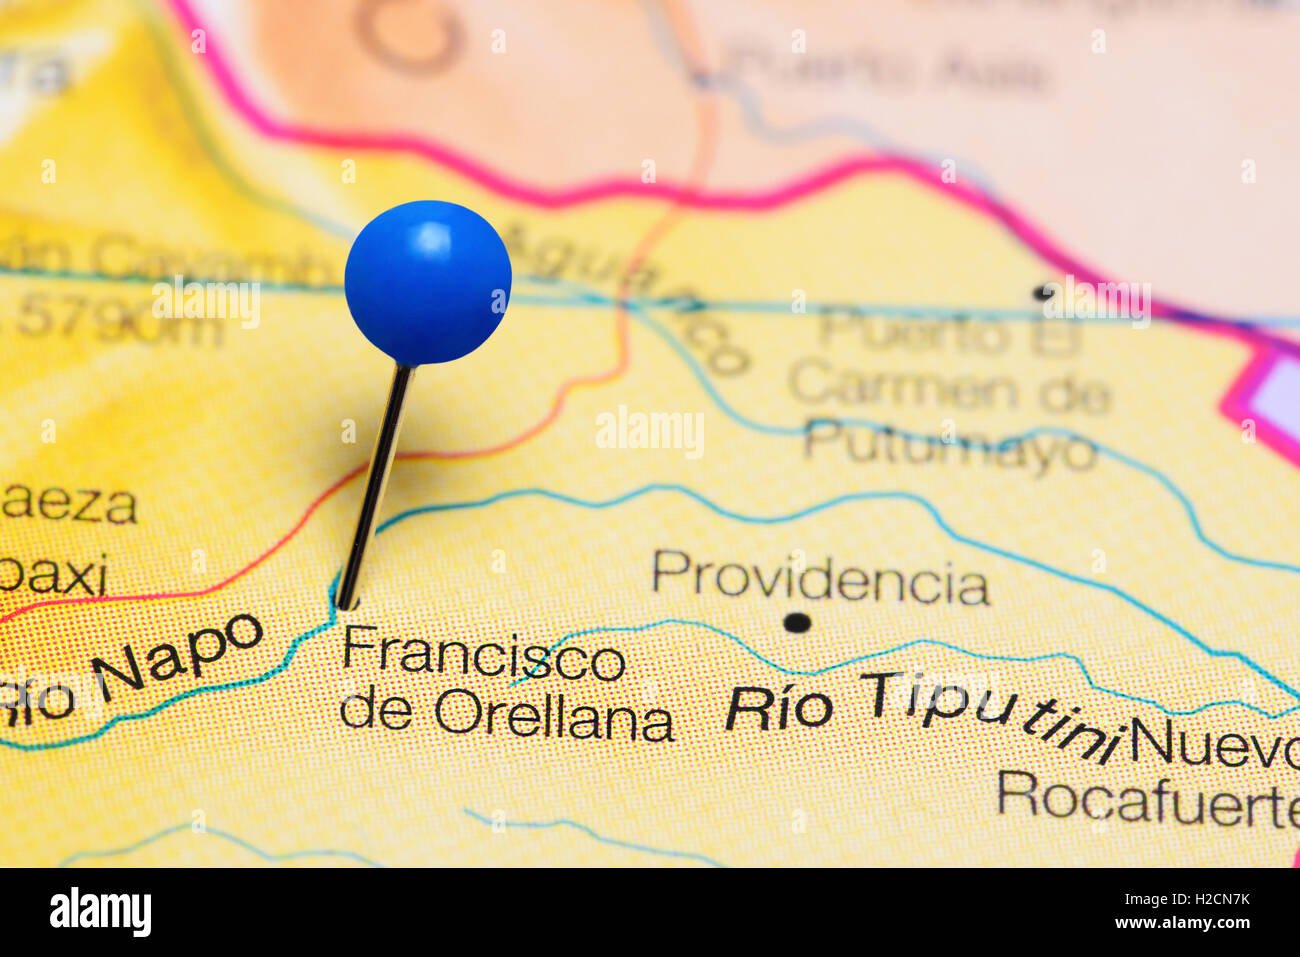 Francisco de Orellana pinned on a map of Ecuador Stock Photo